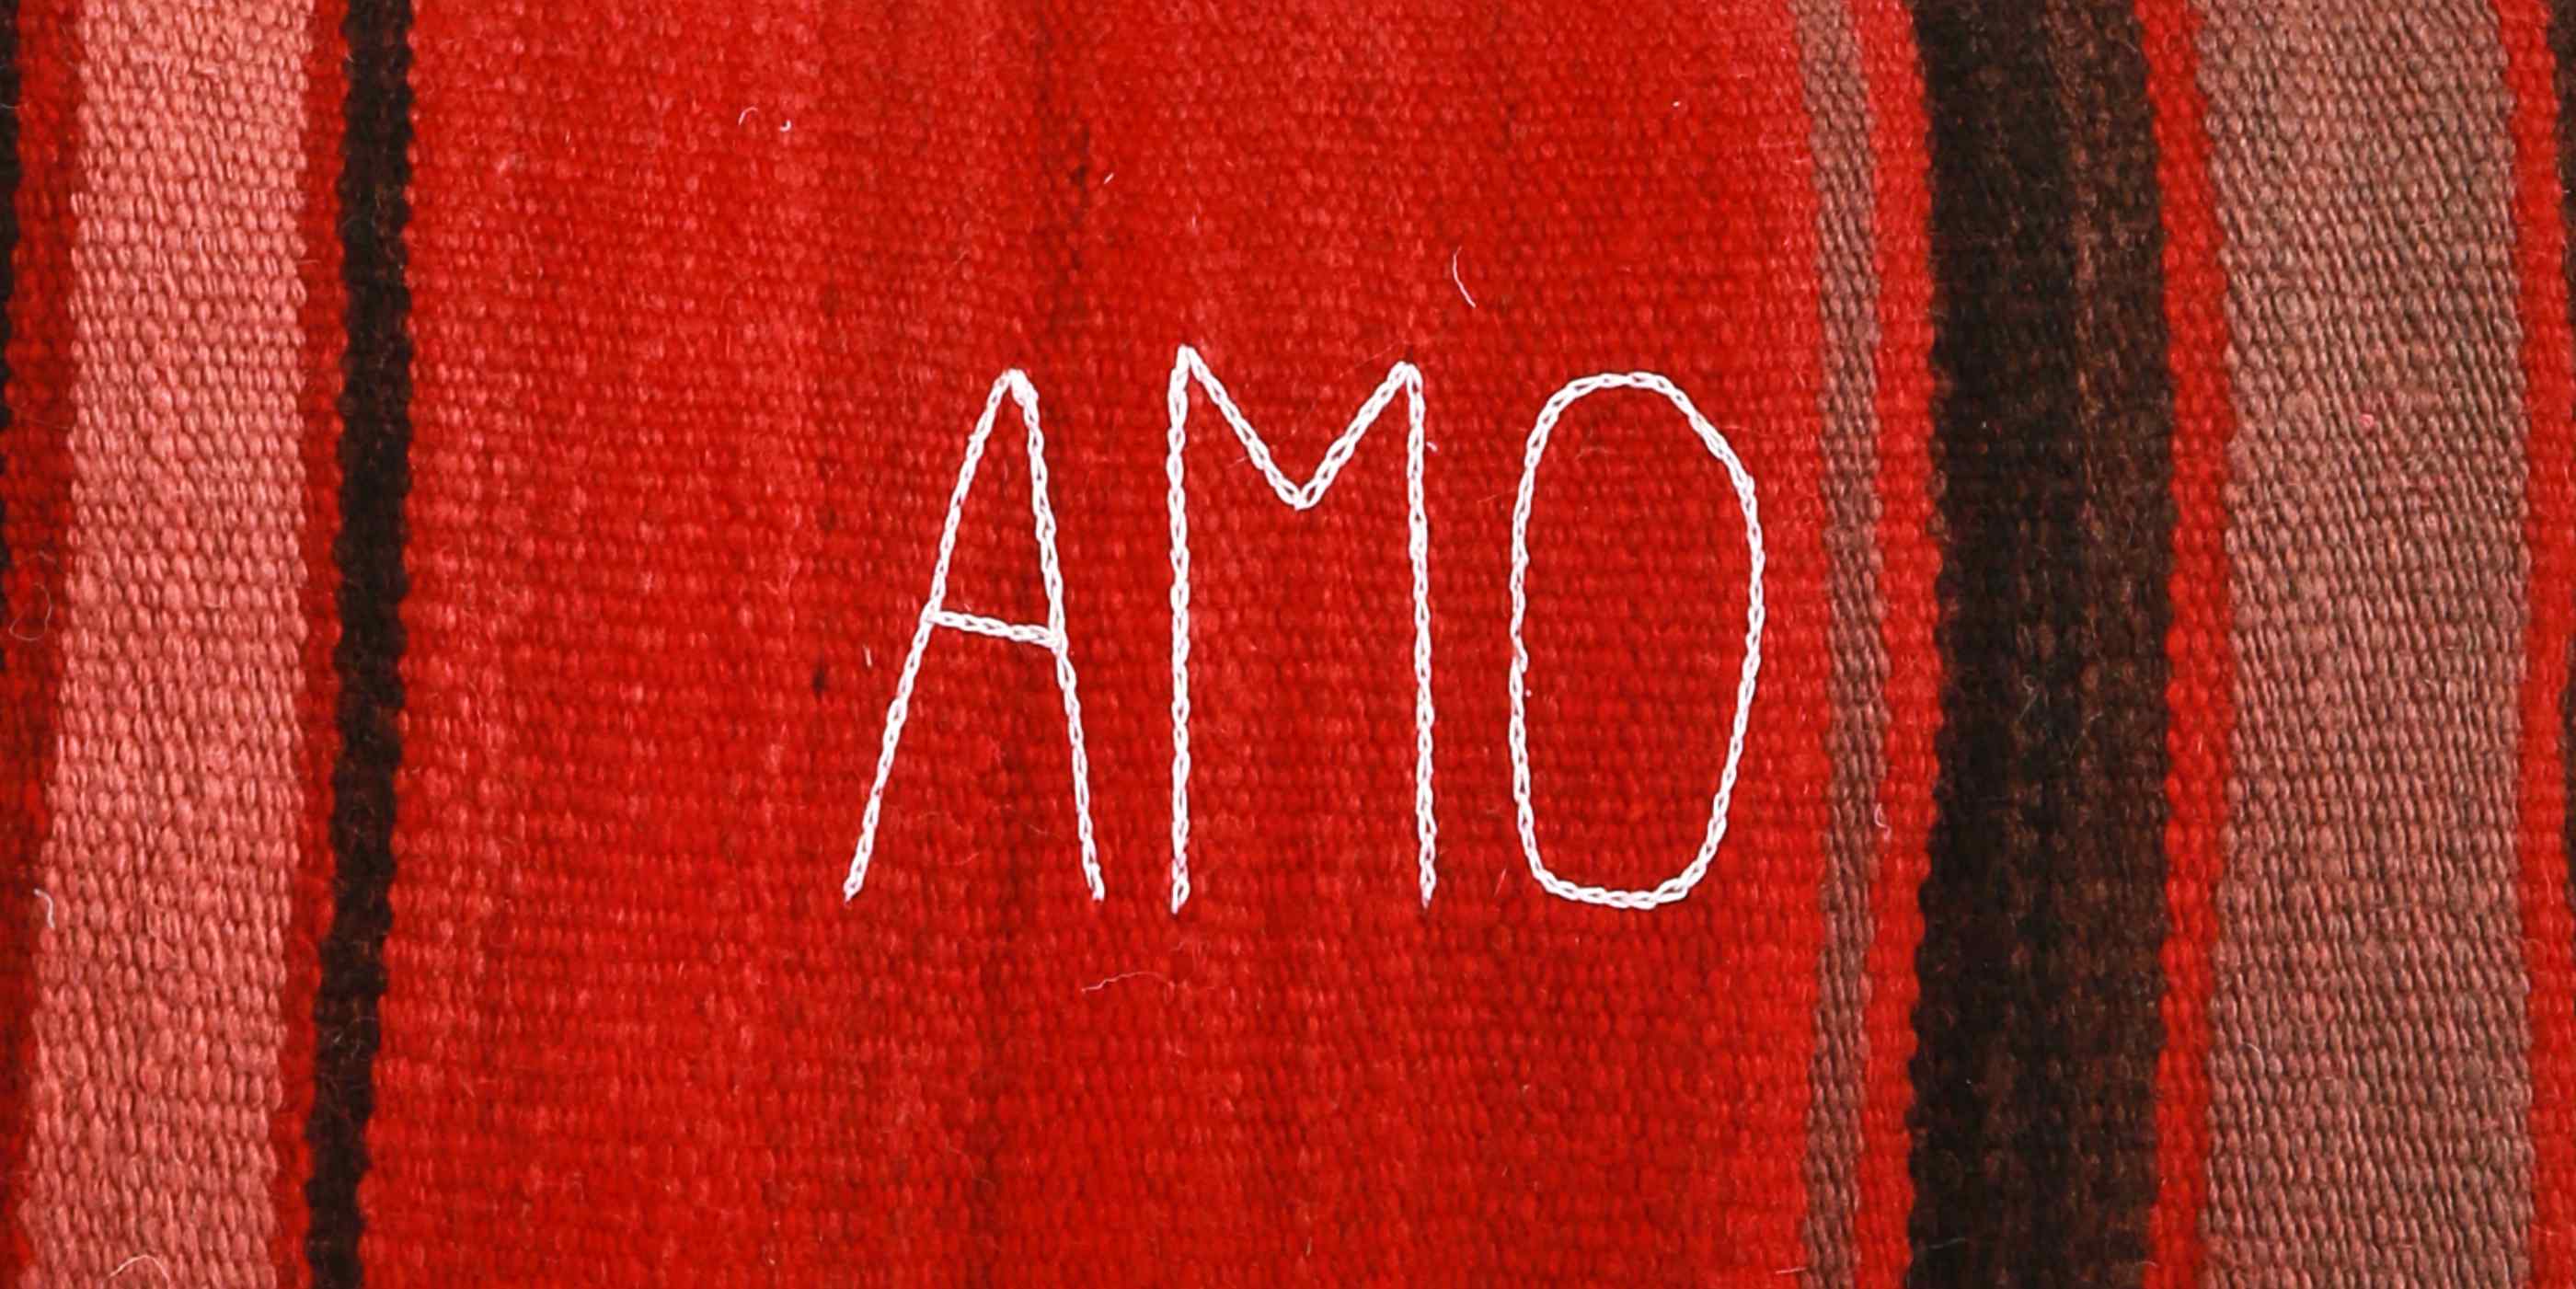 dettaglio della parola AMO ricamata con filo bianco su un cuscino a base rossa